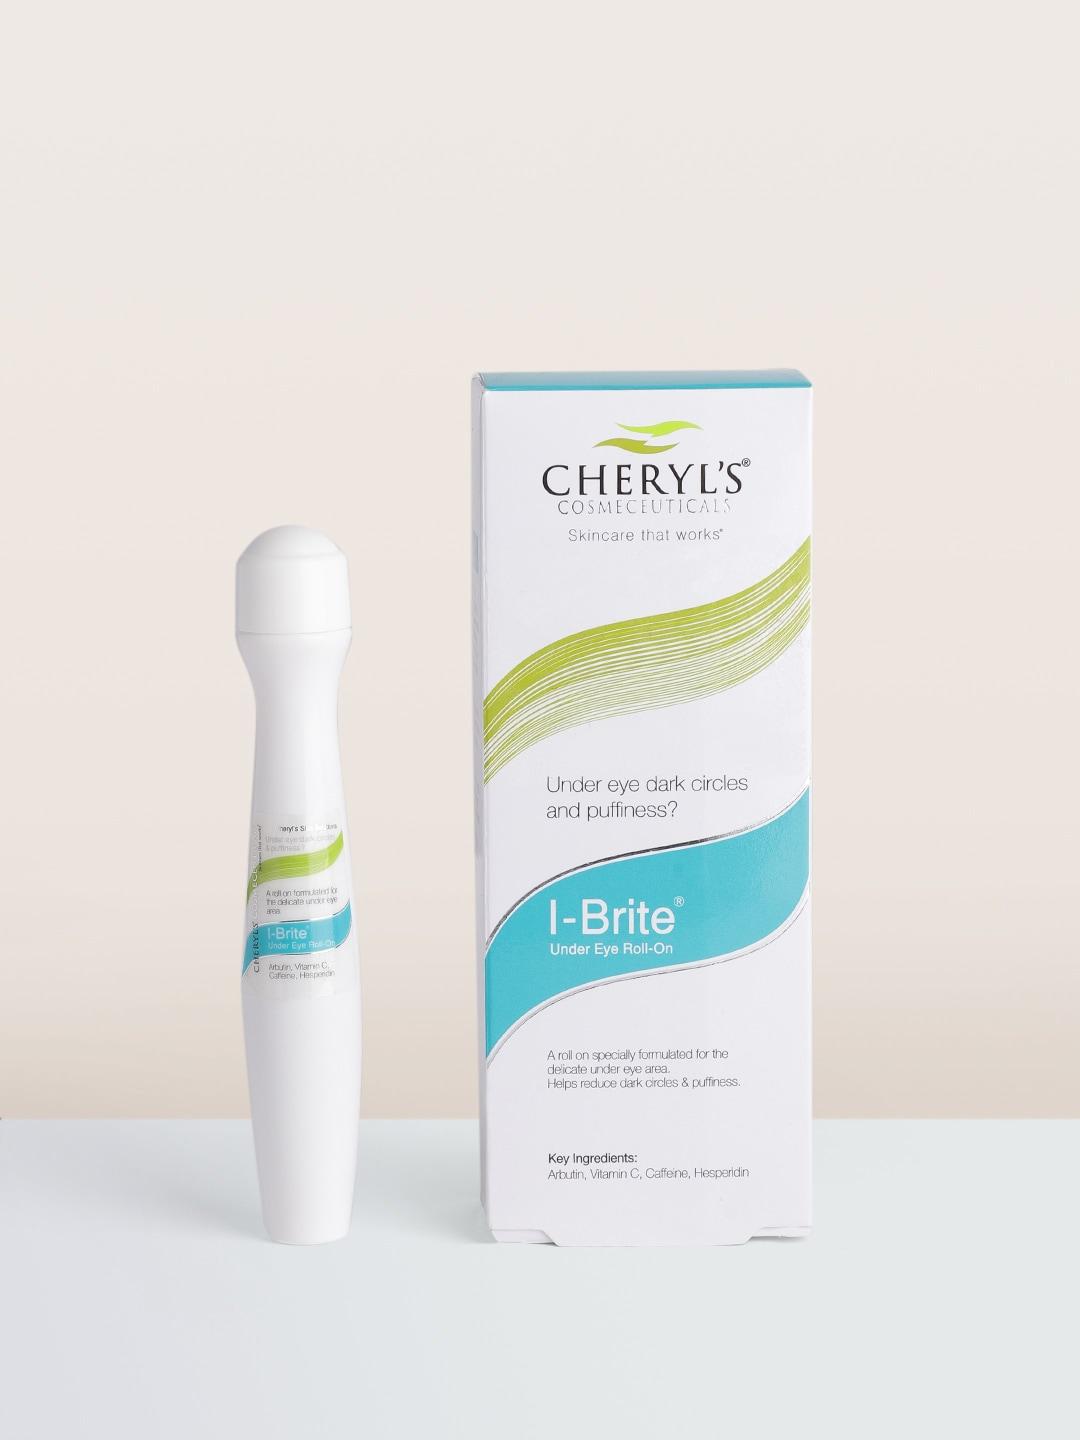 Cheryls Cosmeceuticals I-Brite Under Eye Roll-On with Vitamin C, Arbutin & Caffeine- 15 ml